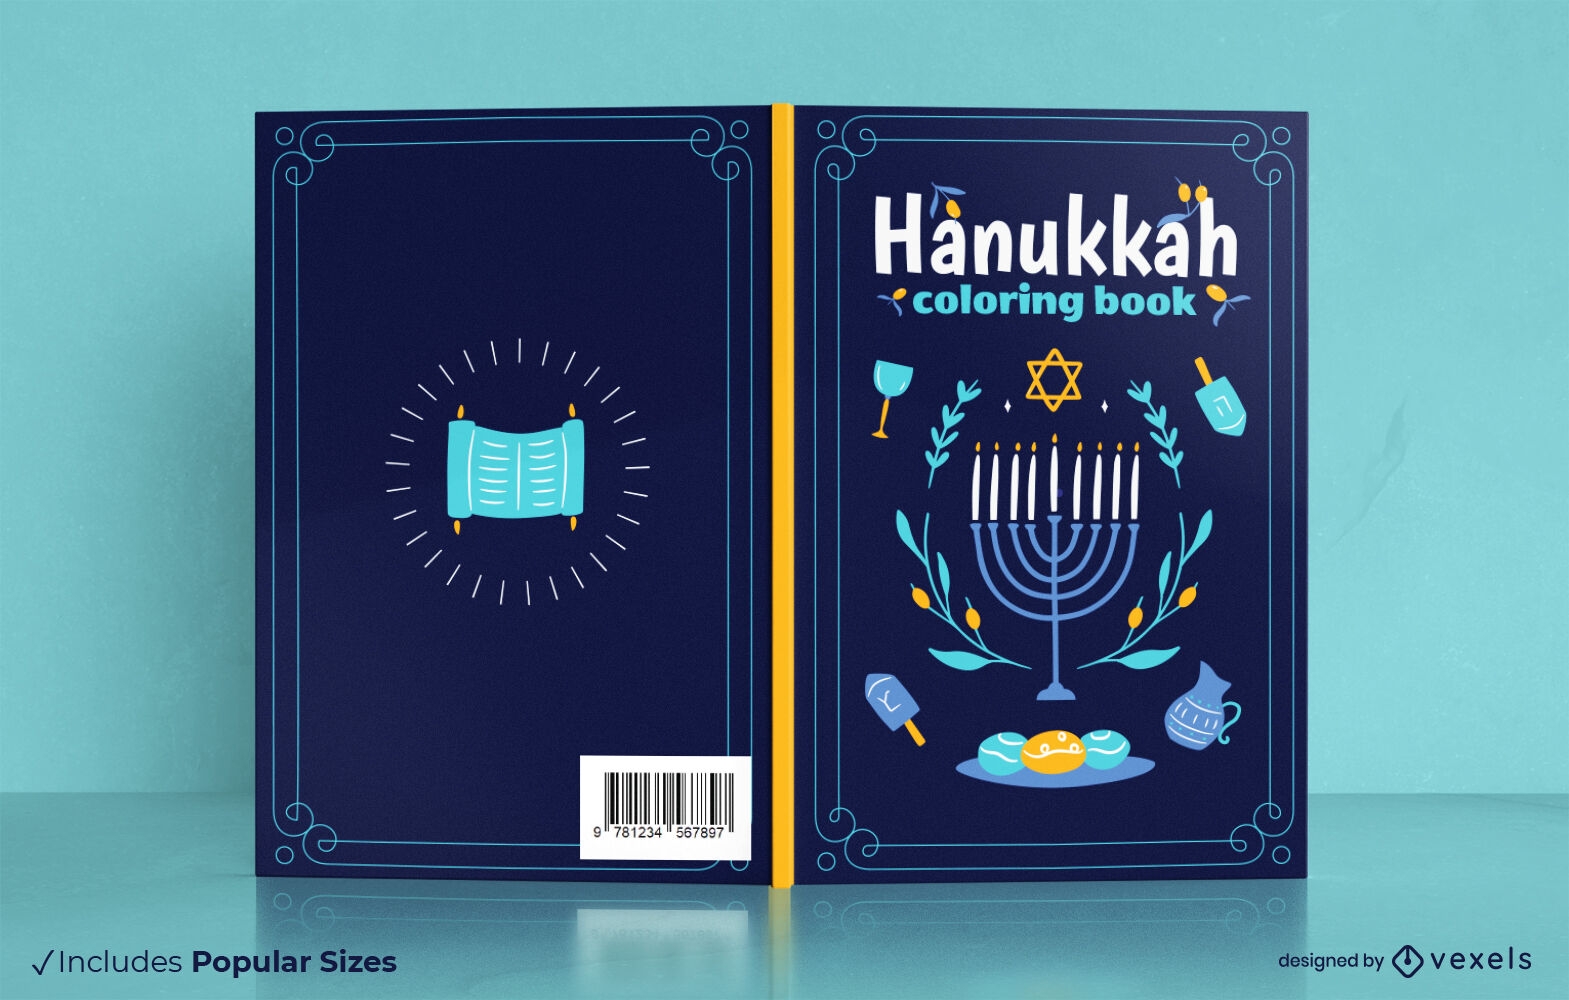 Dise?o de portada de libro para colorear de Hanukkah